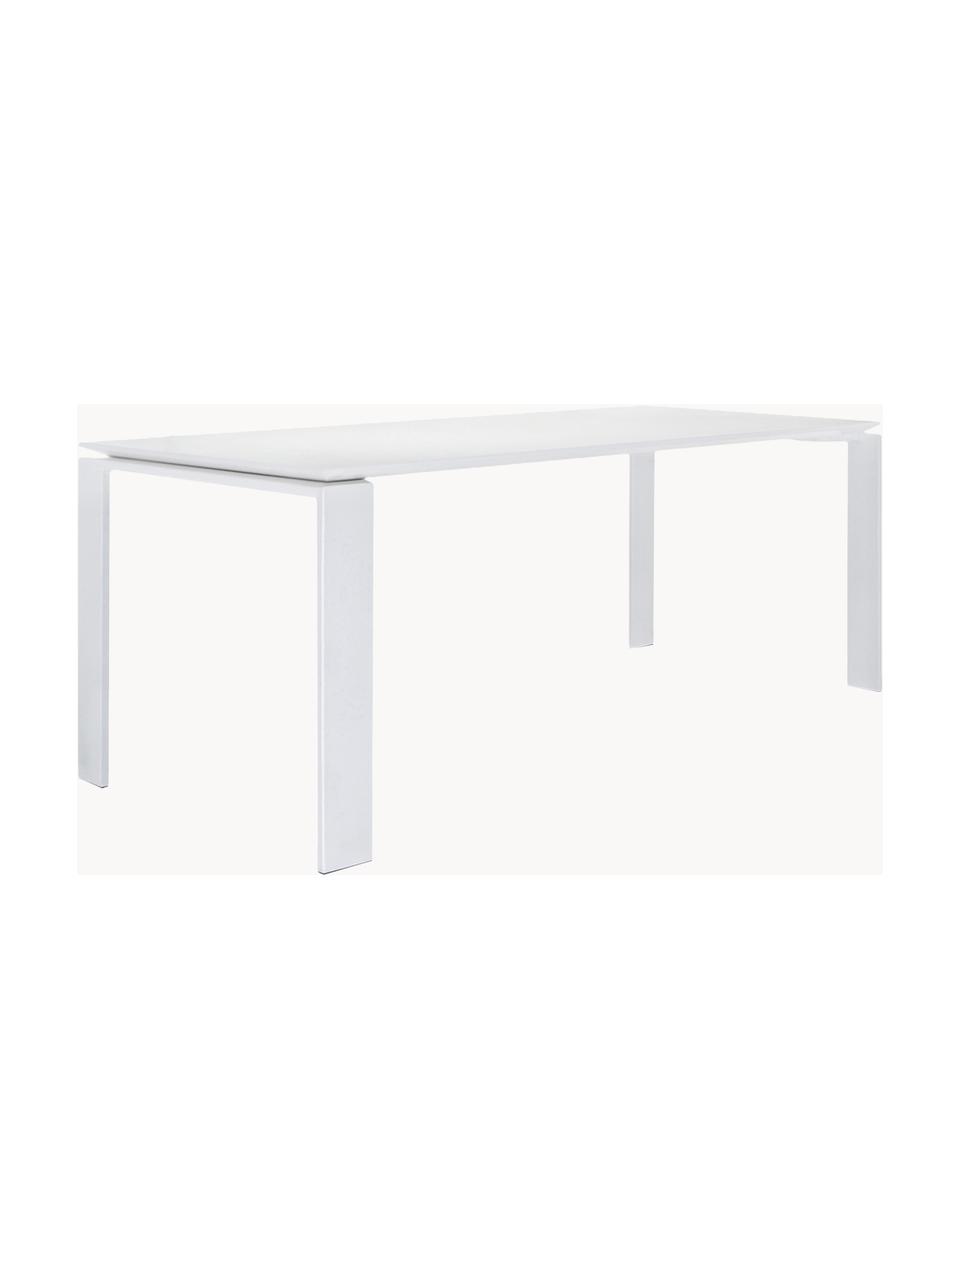 Ogrodowy stół do jadalni Four, 190 x 79 cm, Stal ocynkowana z powłoką epoksydowo-poliestrową, Biały, 190 x 79 cm